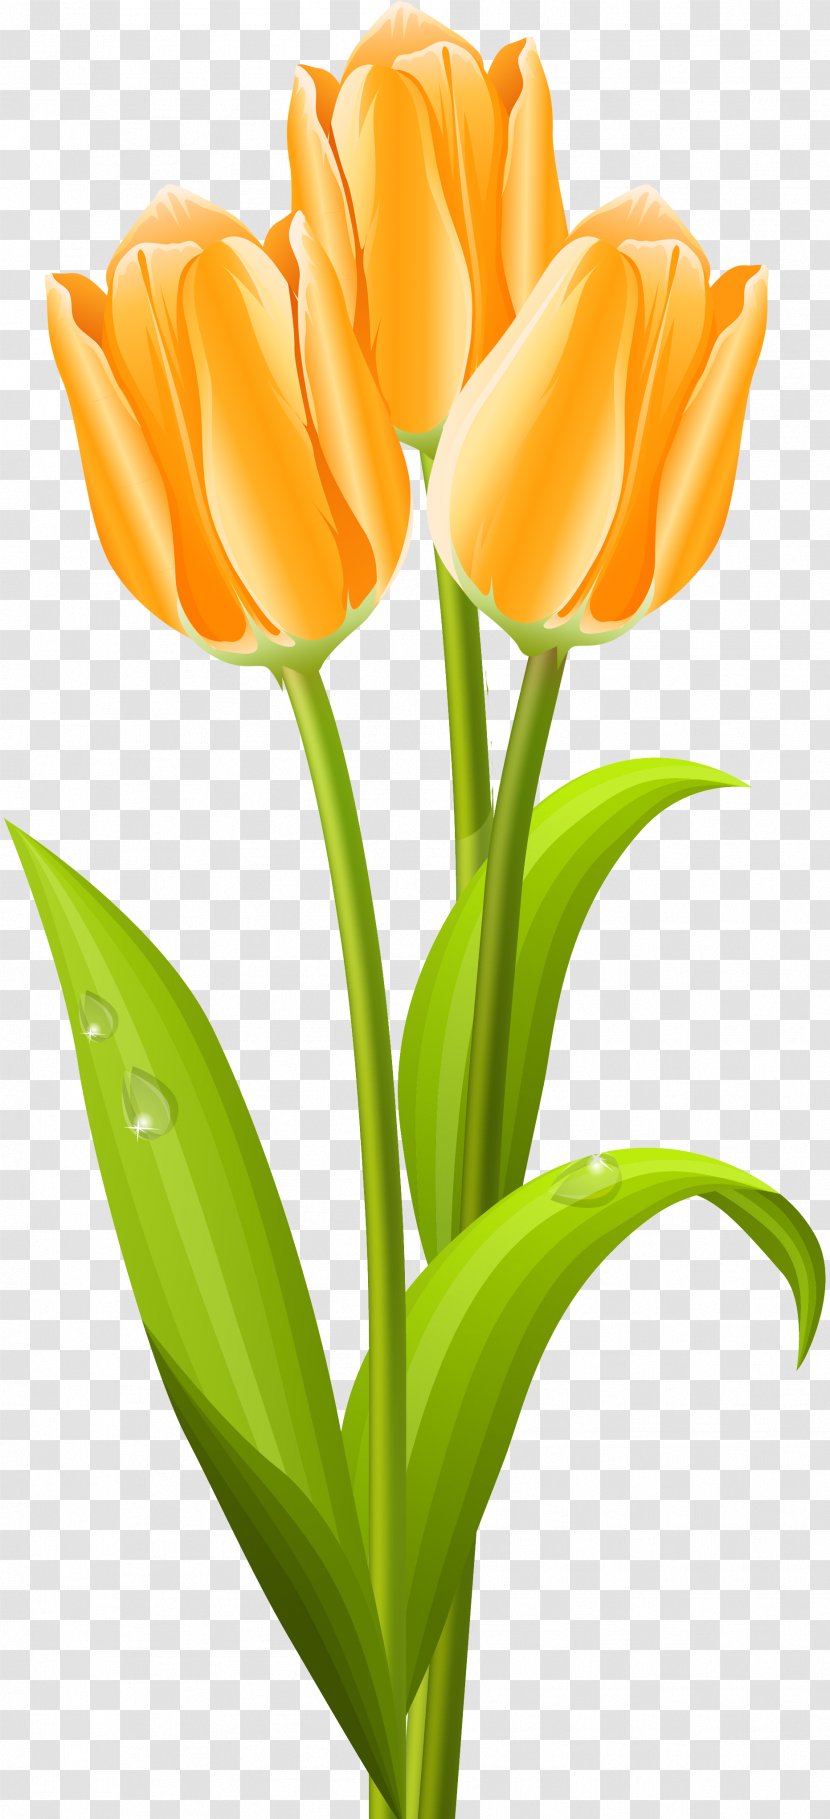 Tulip Flower Bouquet Clip Art - Plant Stem Transparent PNG